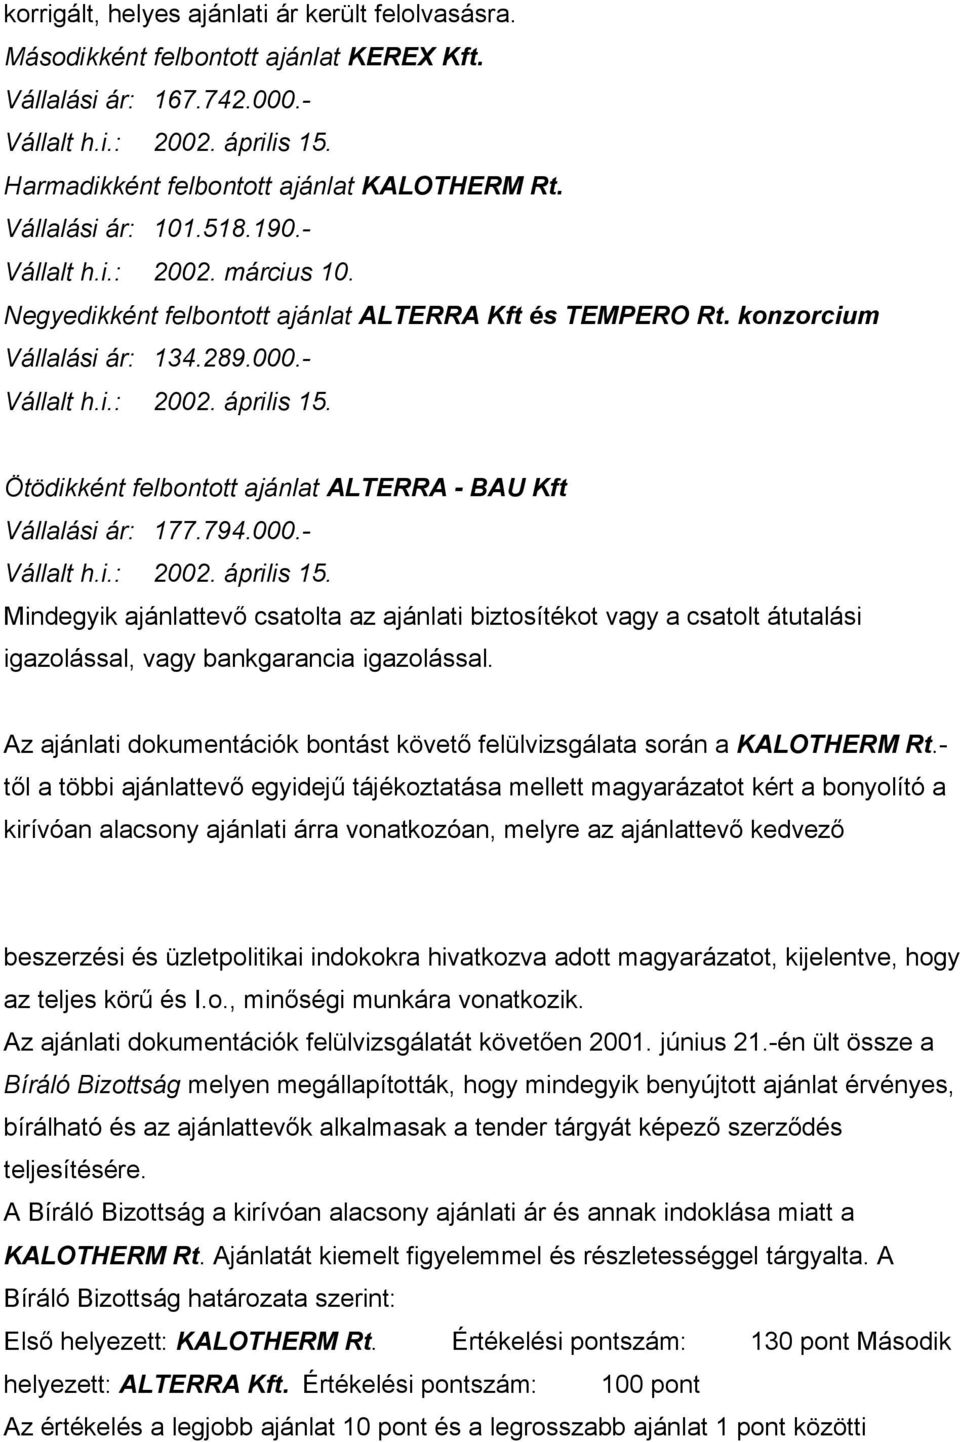 Ötödikként felbontott ajánlat ALTERRA - BAU Kft Vállalási ár: 177.794.000.- Vállalt h.i.: 2002. április 15.